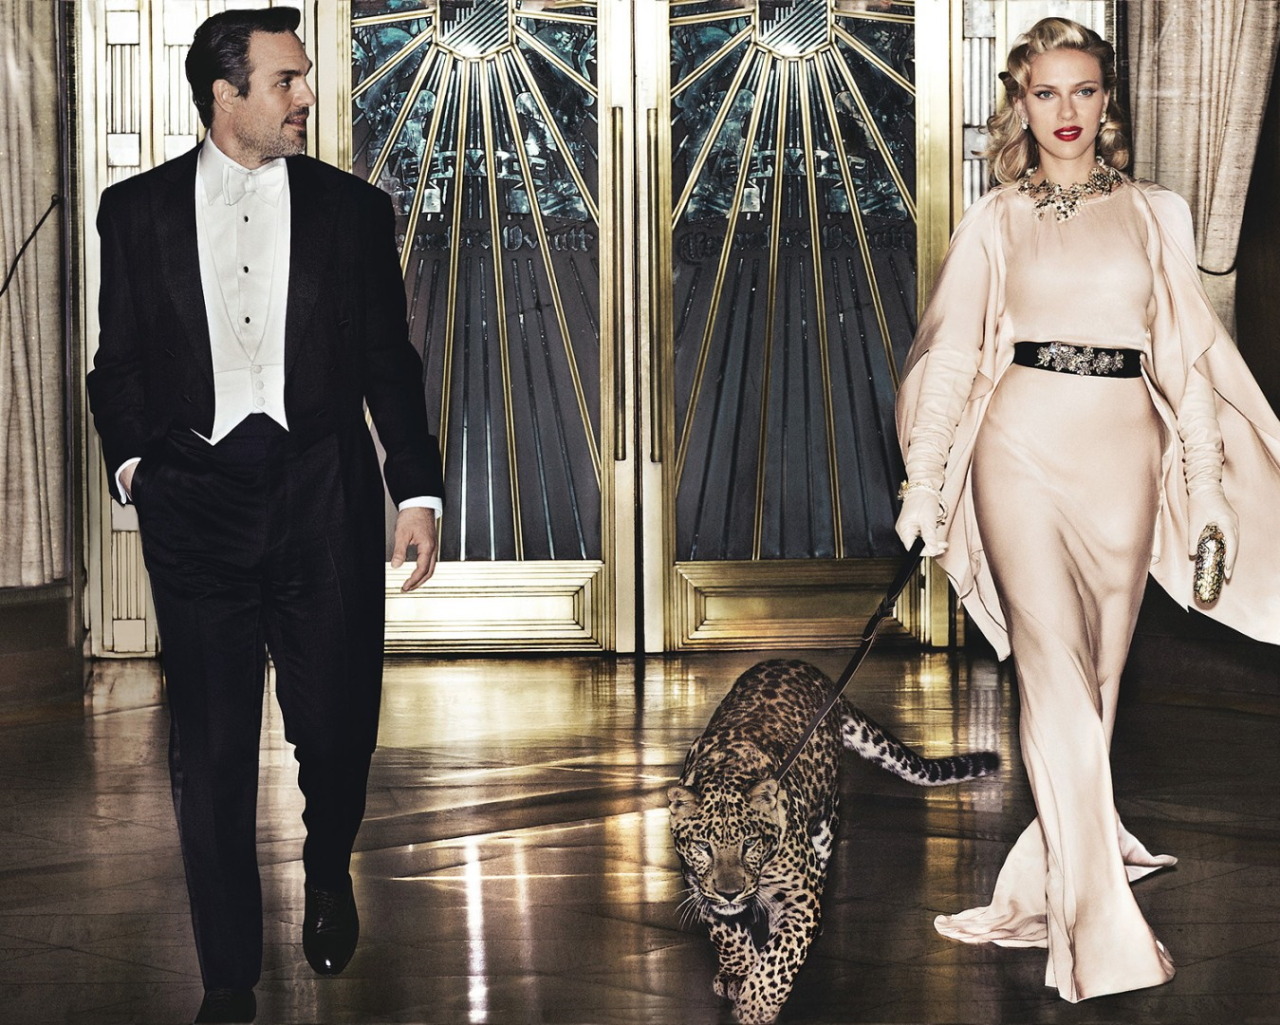 Vogue US May 2012 - Mark Ruffalo & Scarlett Johansson by Mario Testino #fashion#Vogue Us#mark ruffalo#Scarlett Johansson#Mario Testino